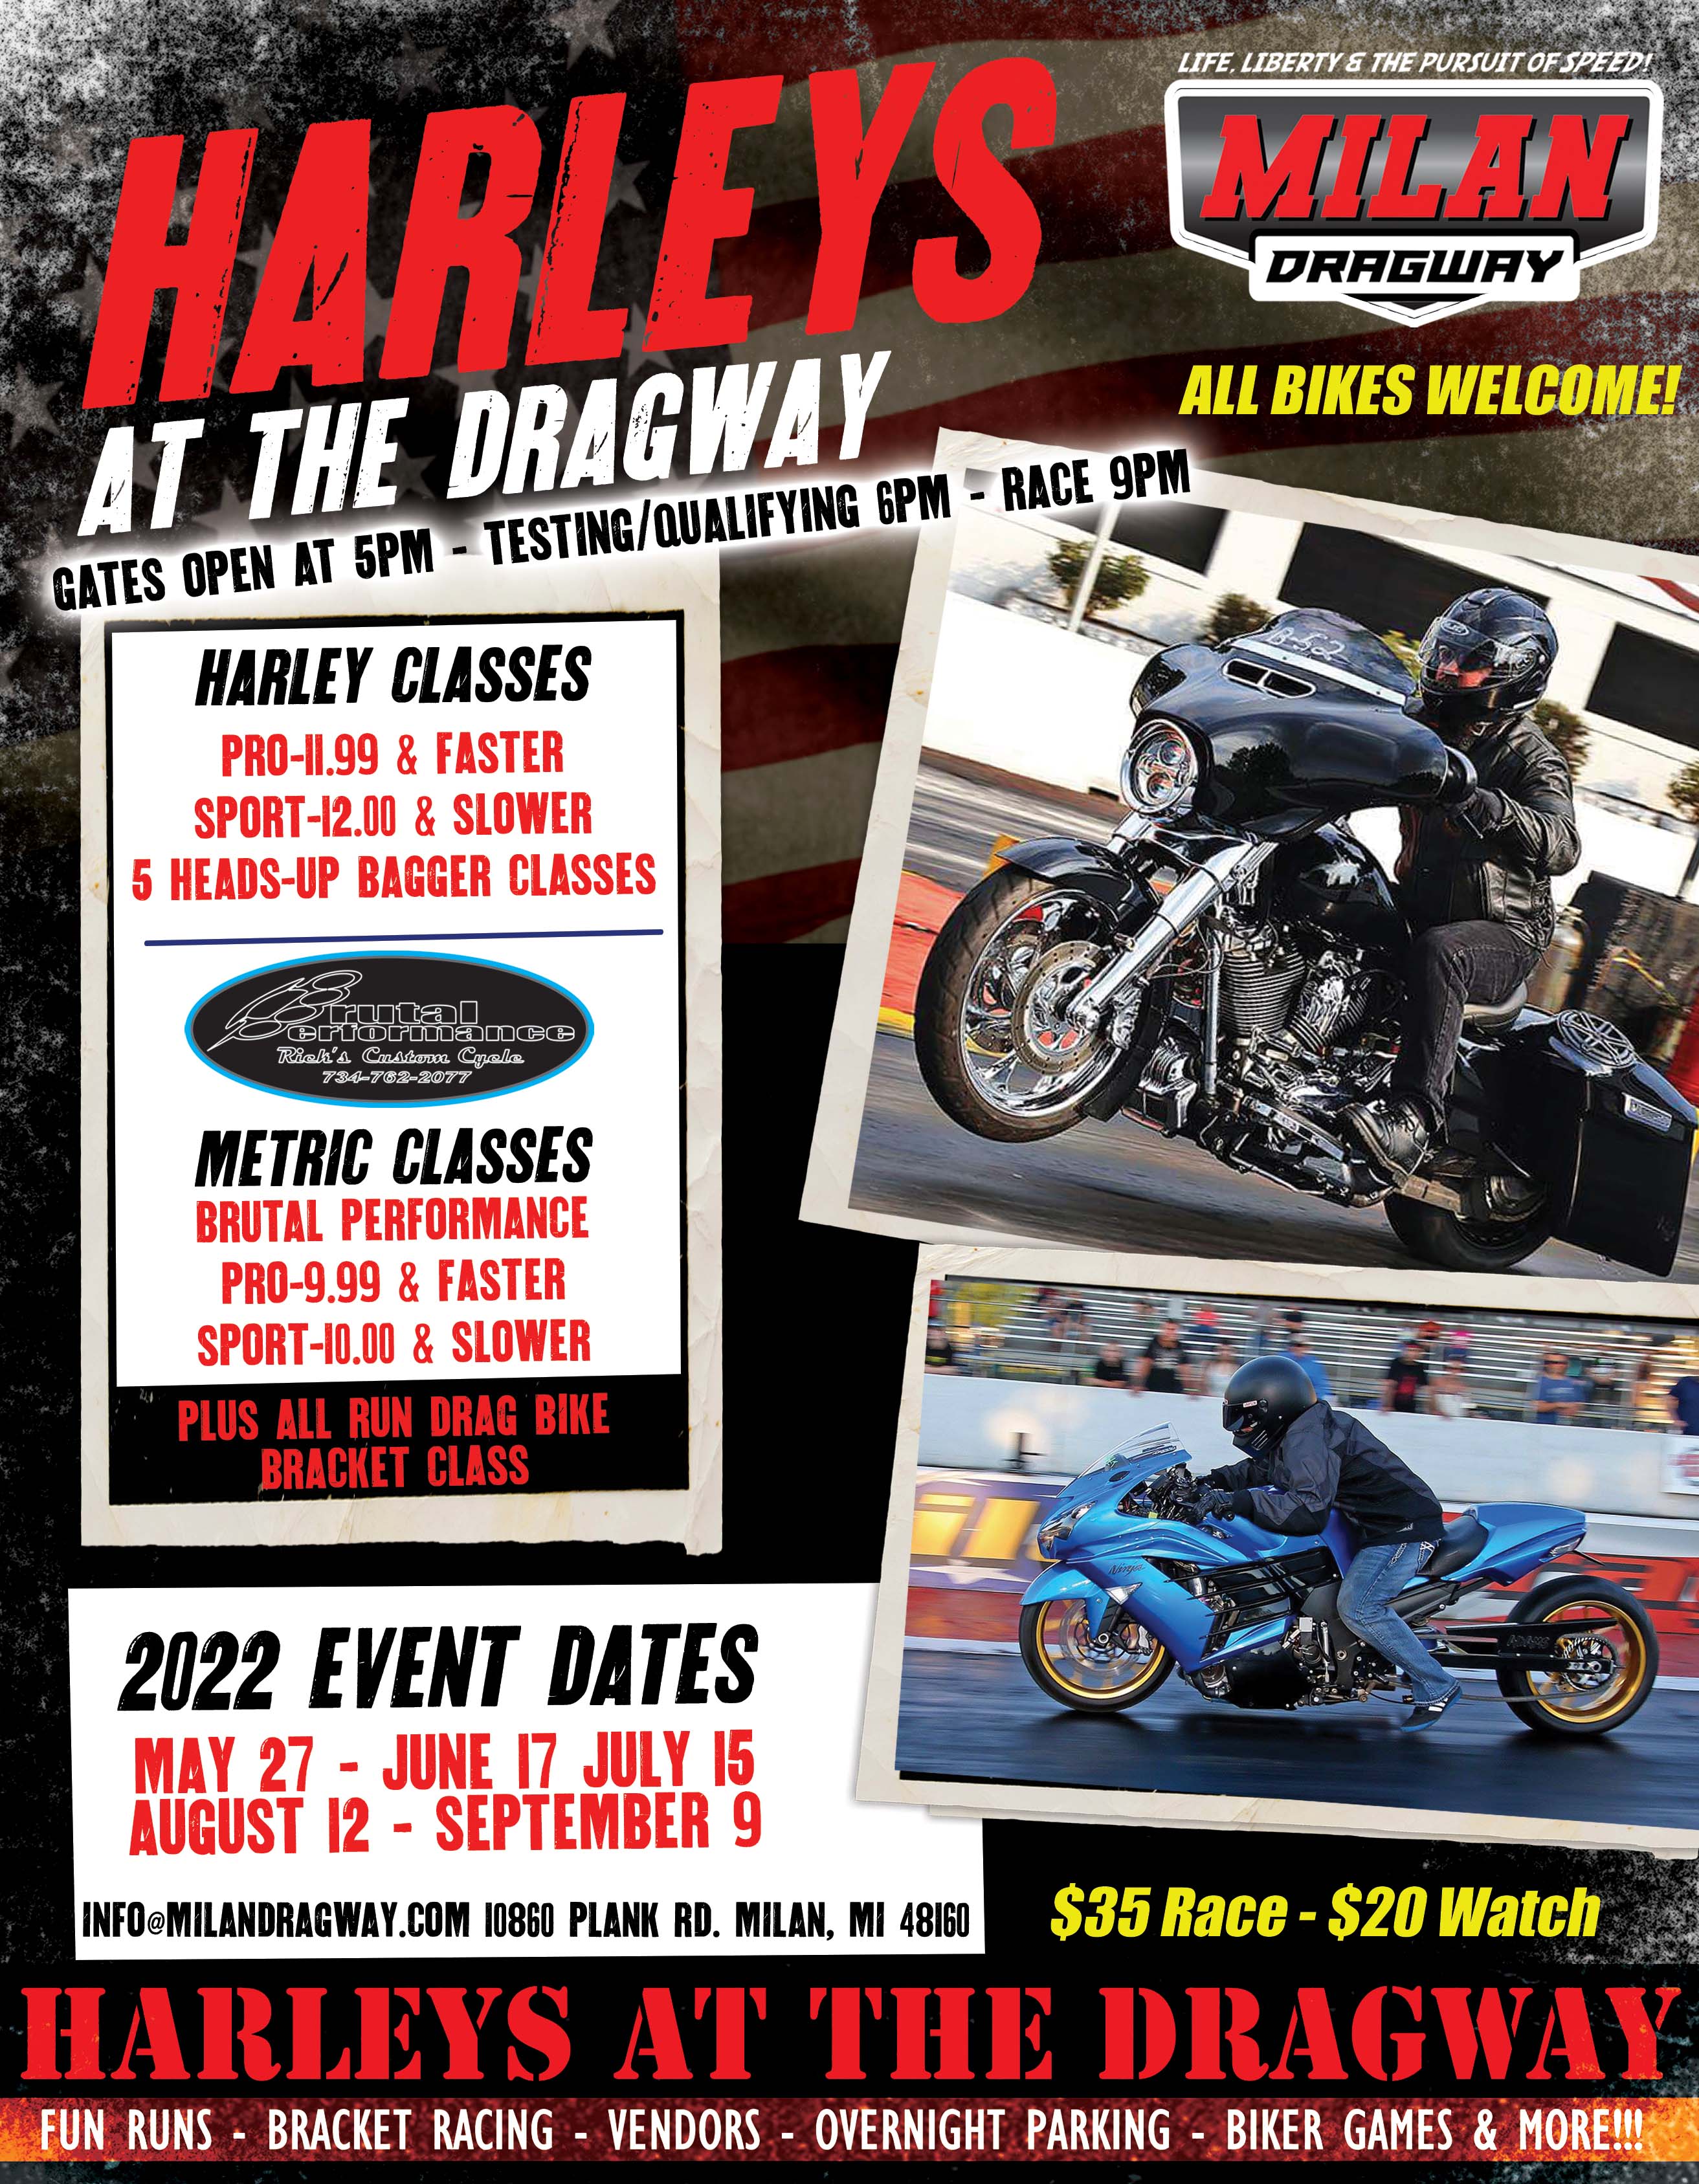 Harleys at the Dragway This Friday!